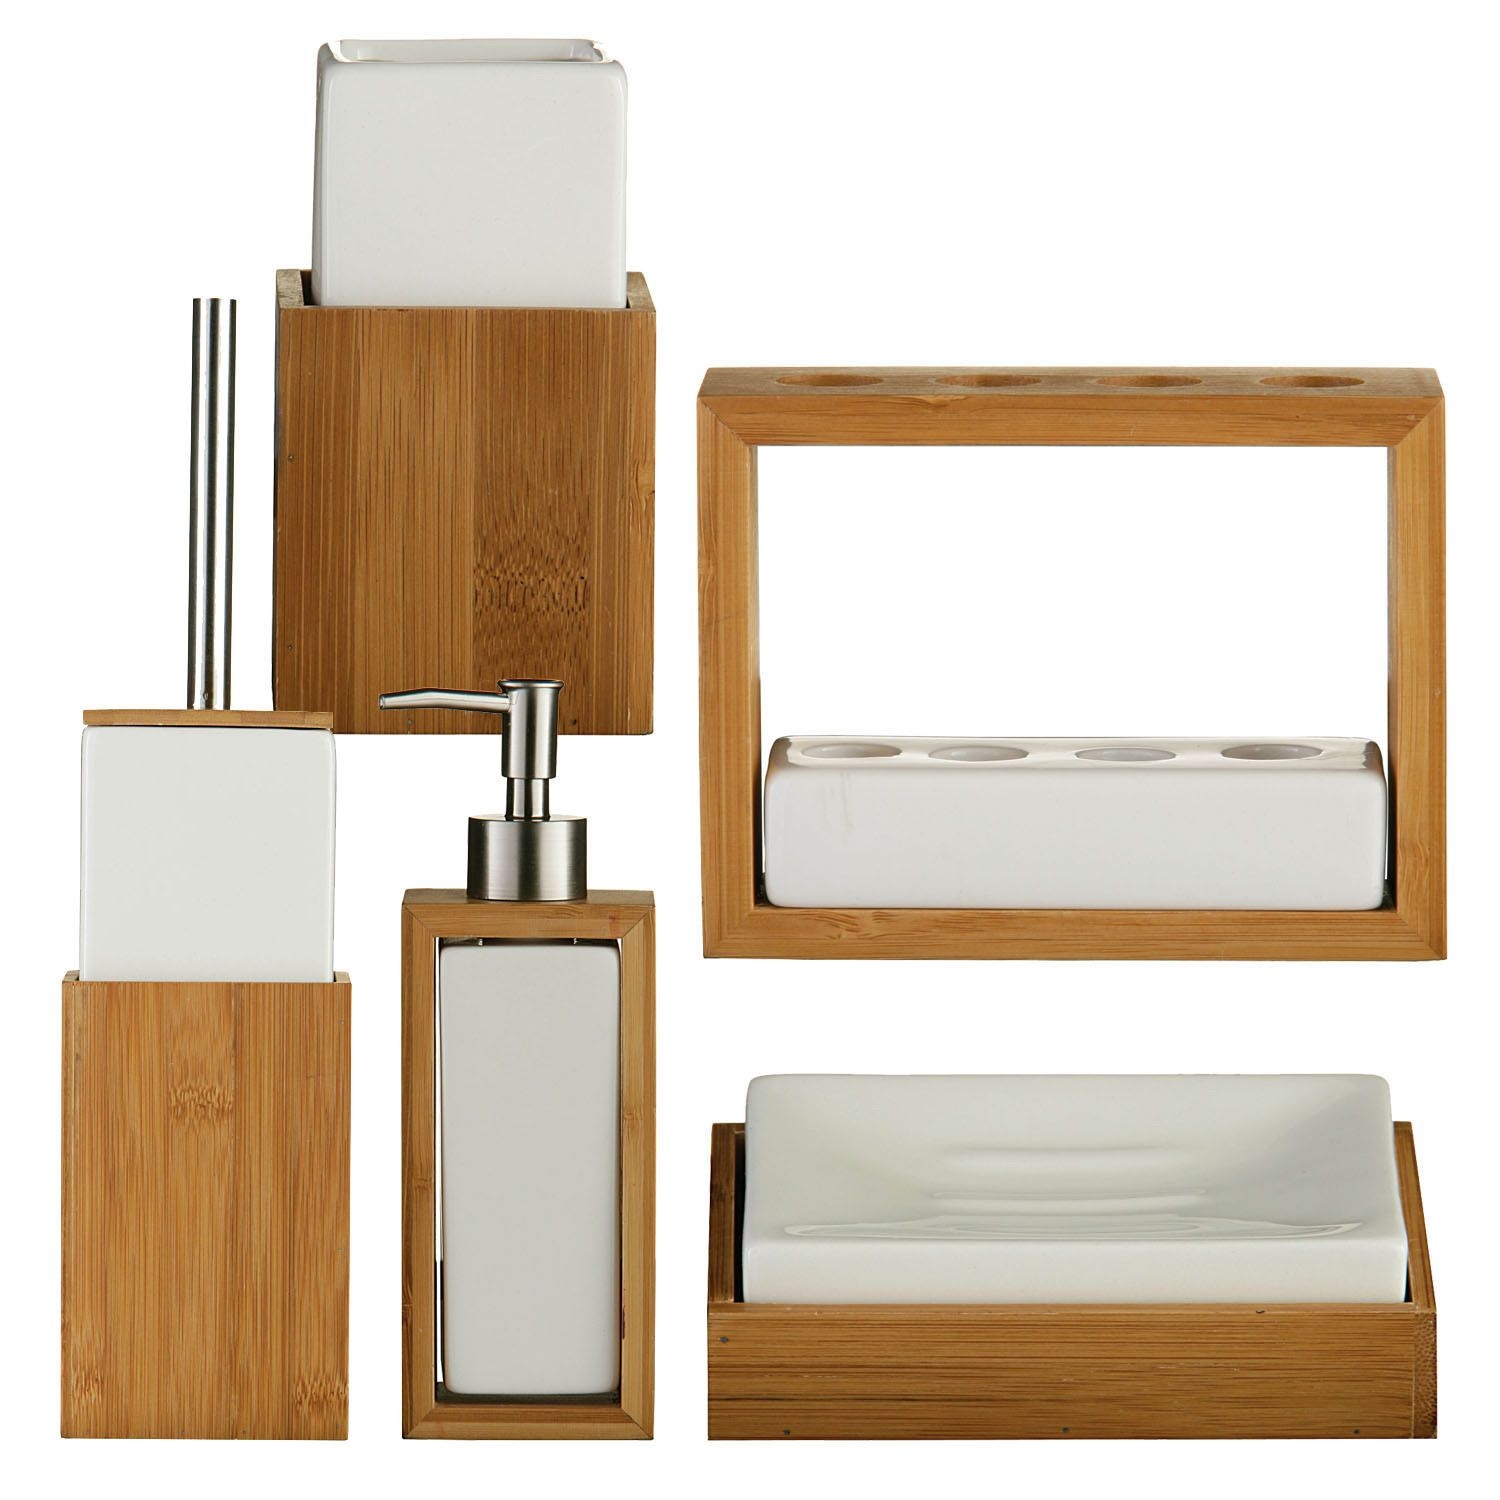 Essentials wooden bamboo white ceramic bathroom sink accessories set